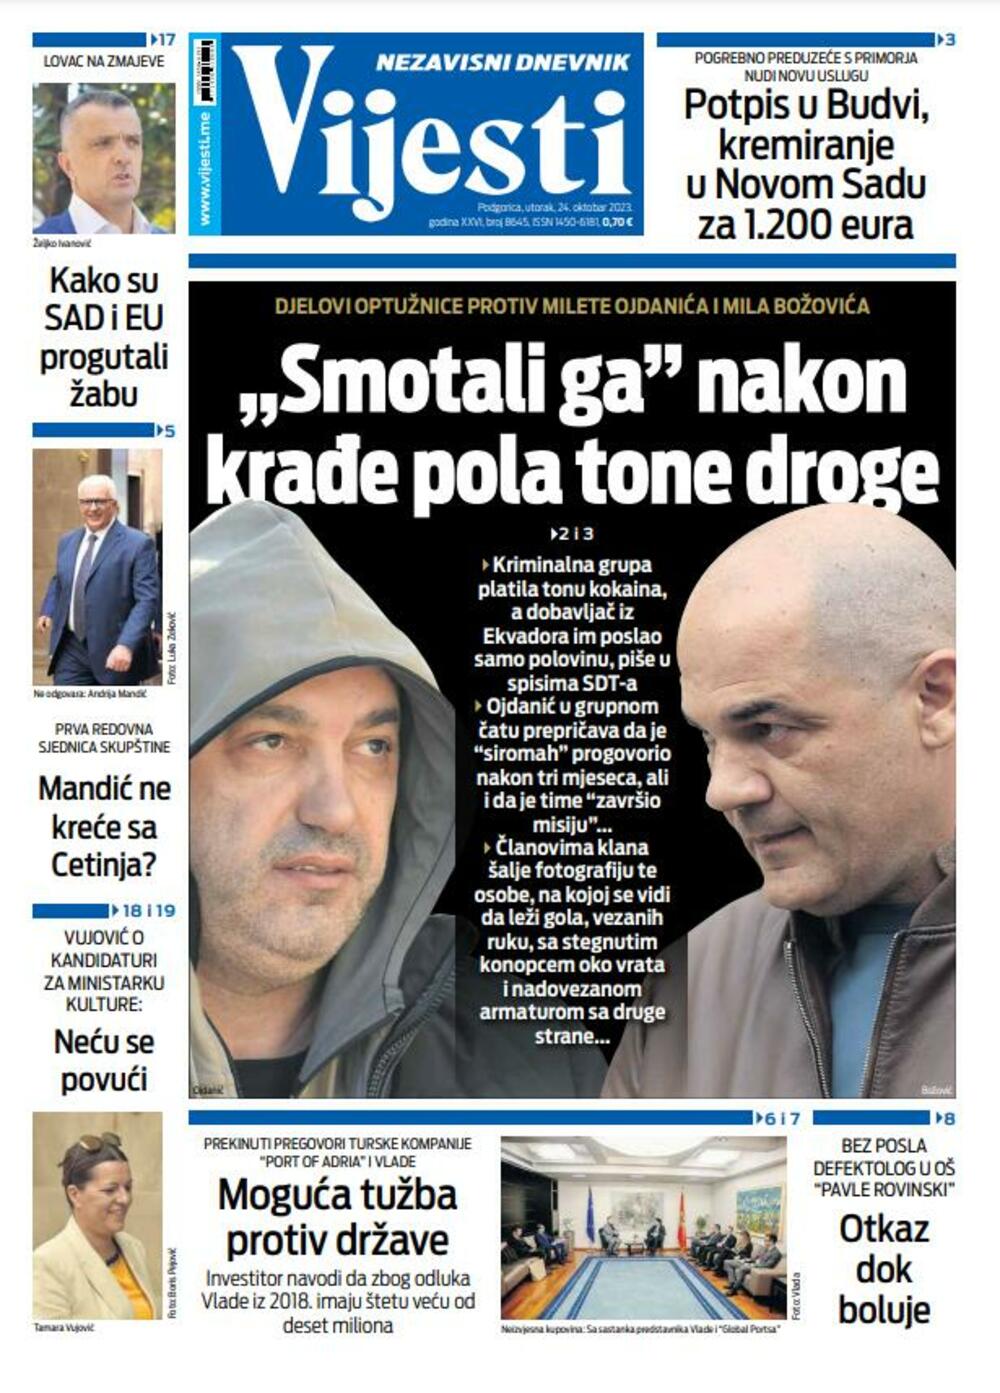 Naslovna strana "Vijesti" za 24. oktobar 2023., Foto: Vijesti